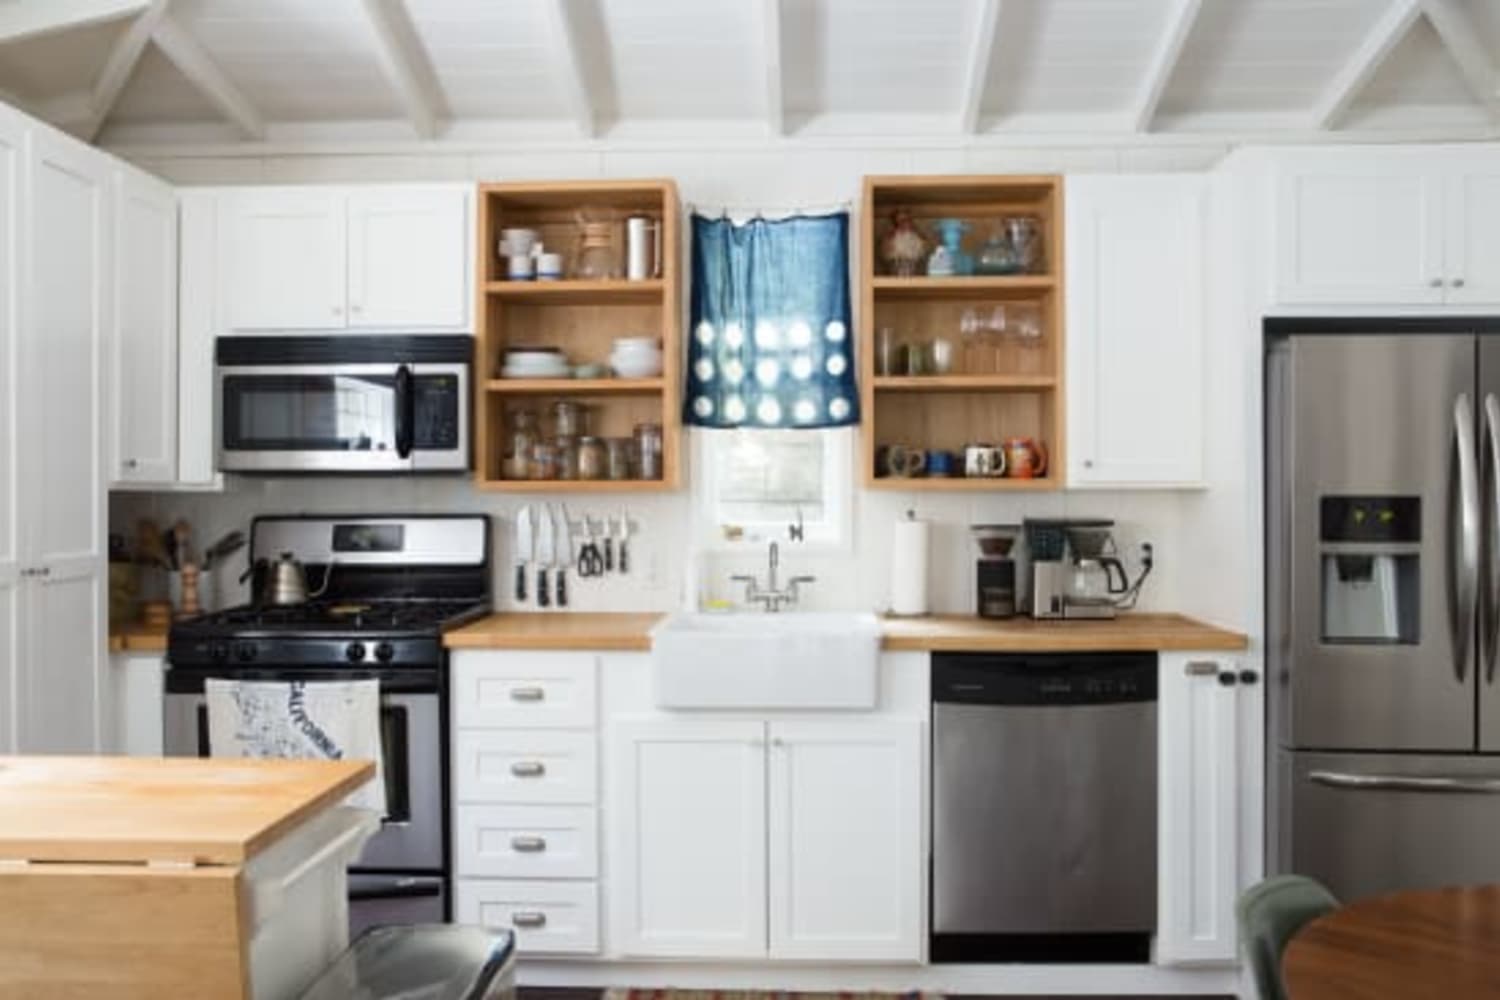 Fridge Surround - Kitchen Cabinet Ideas